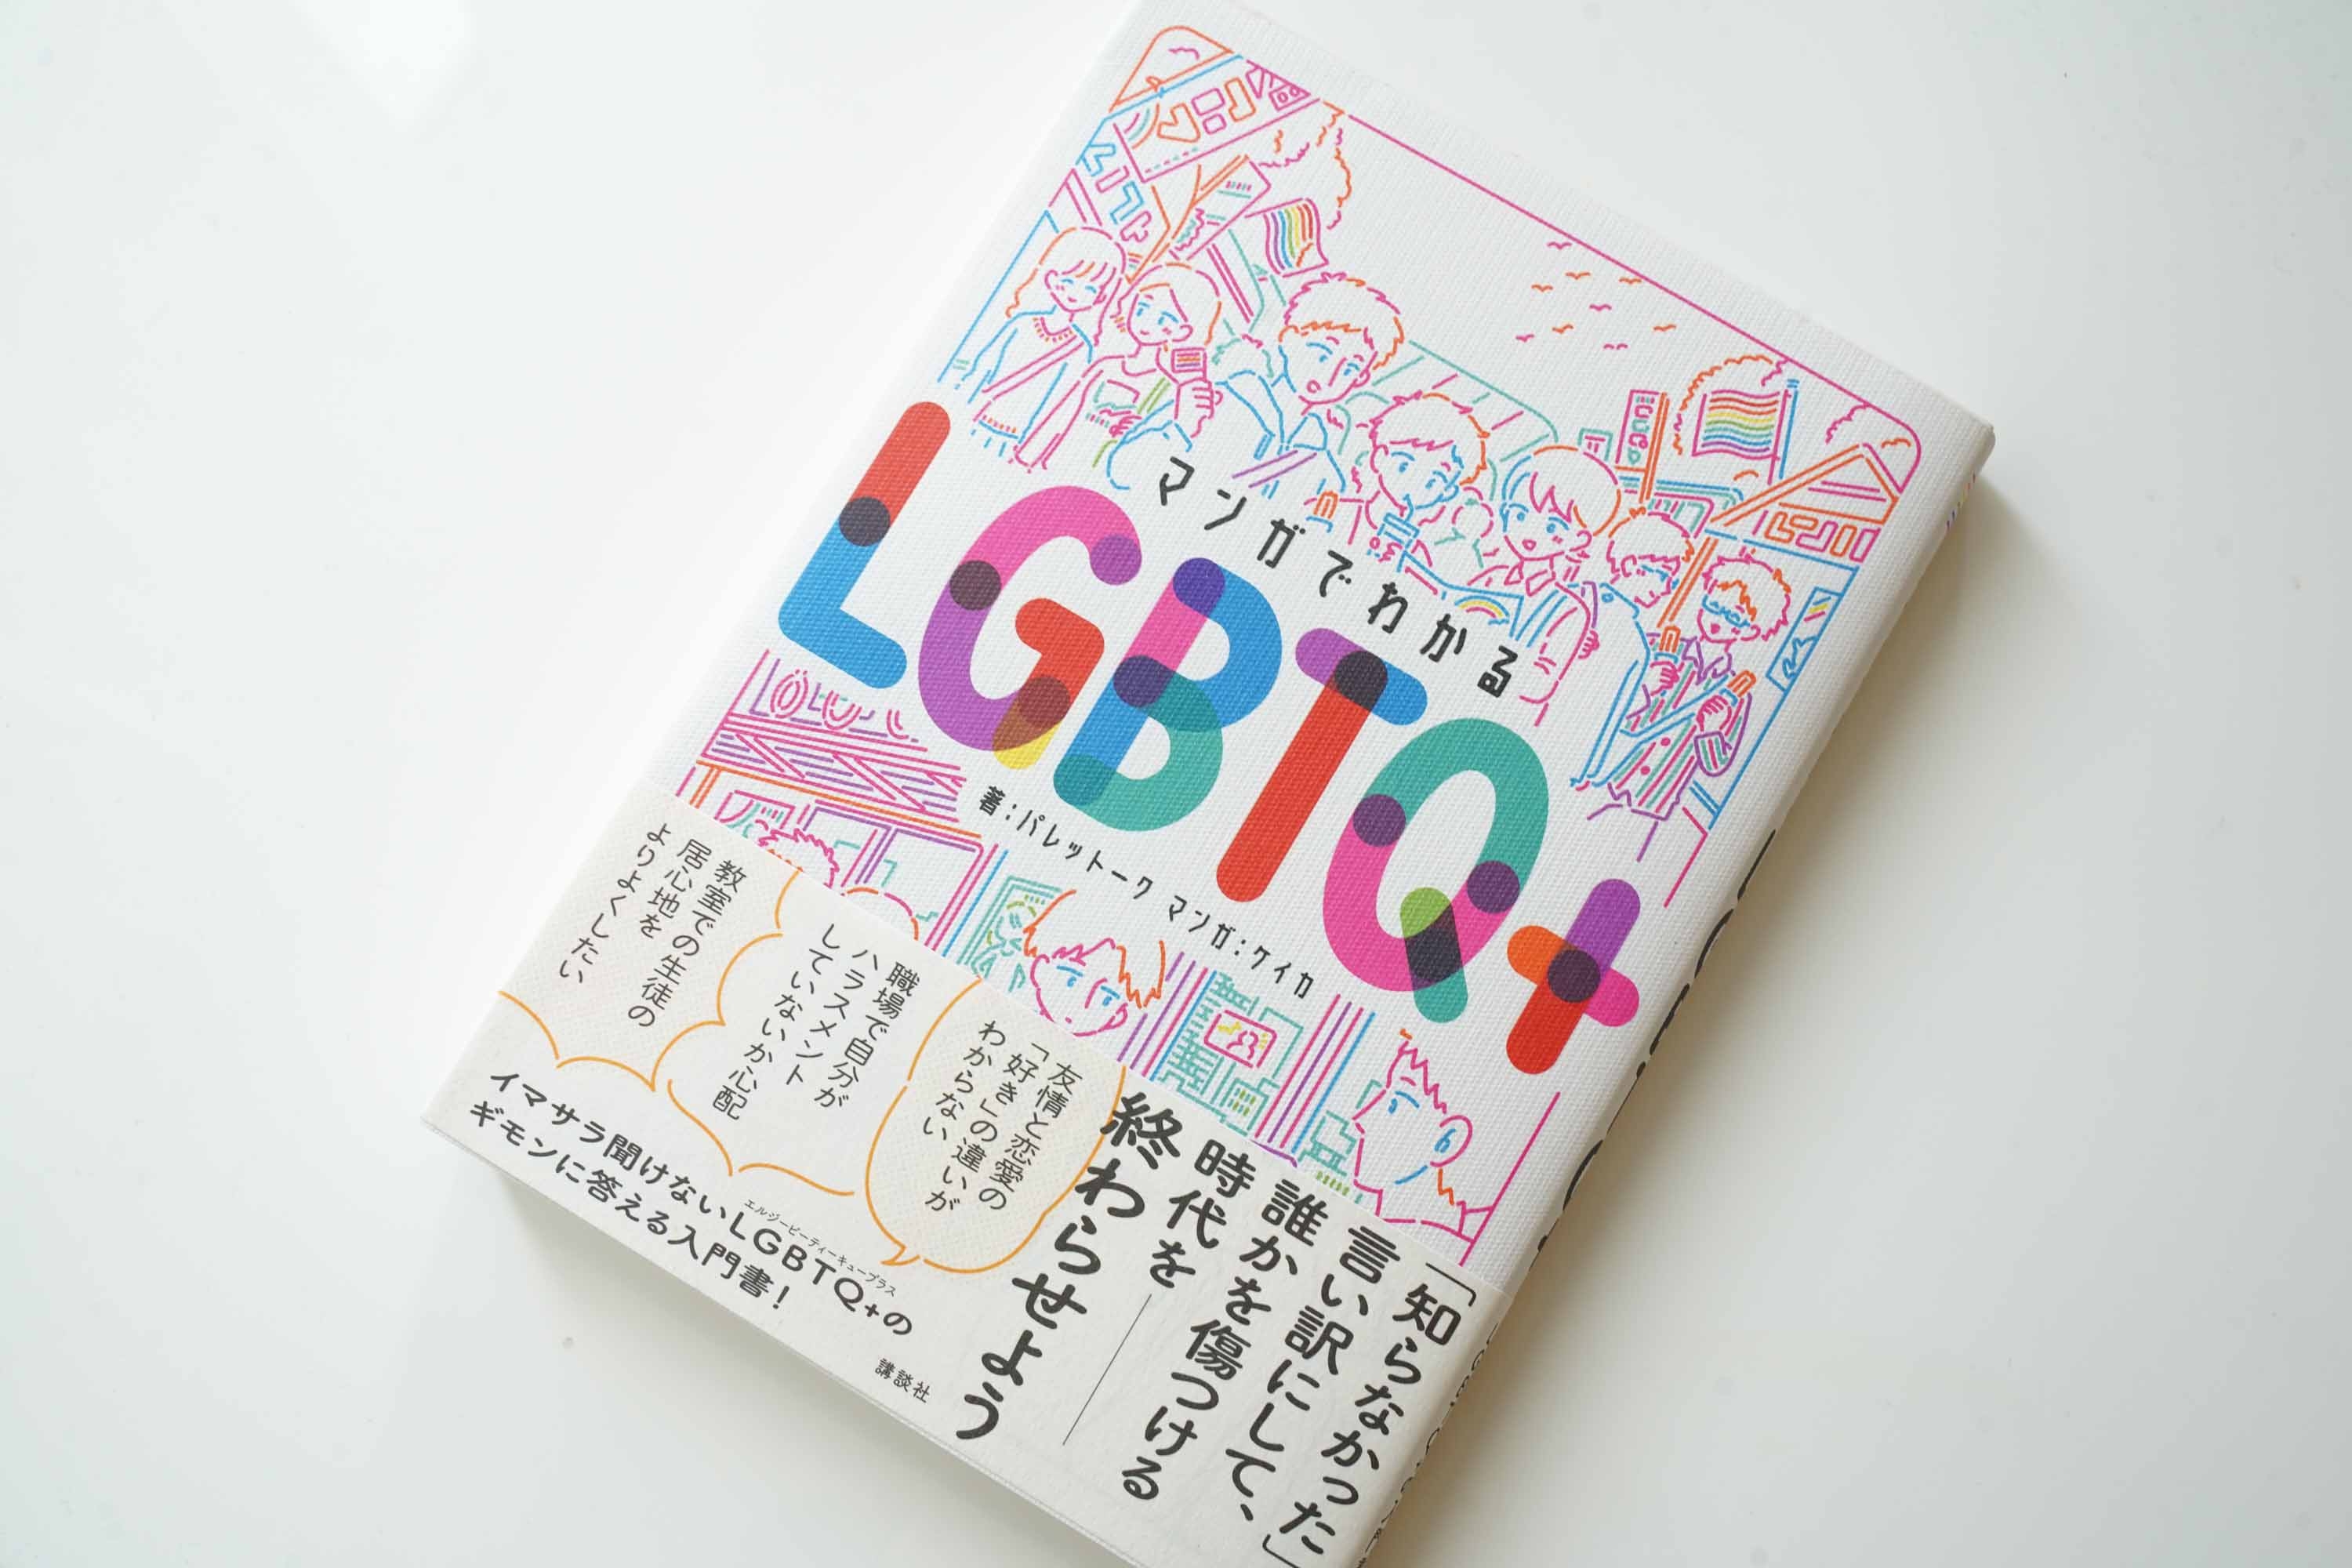 LGBTQ+についてまず知りたい人に薦めたい『マンガでわかるLGBTQ+』